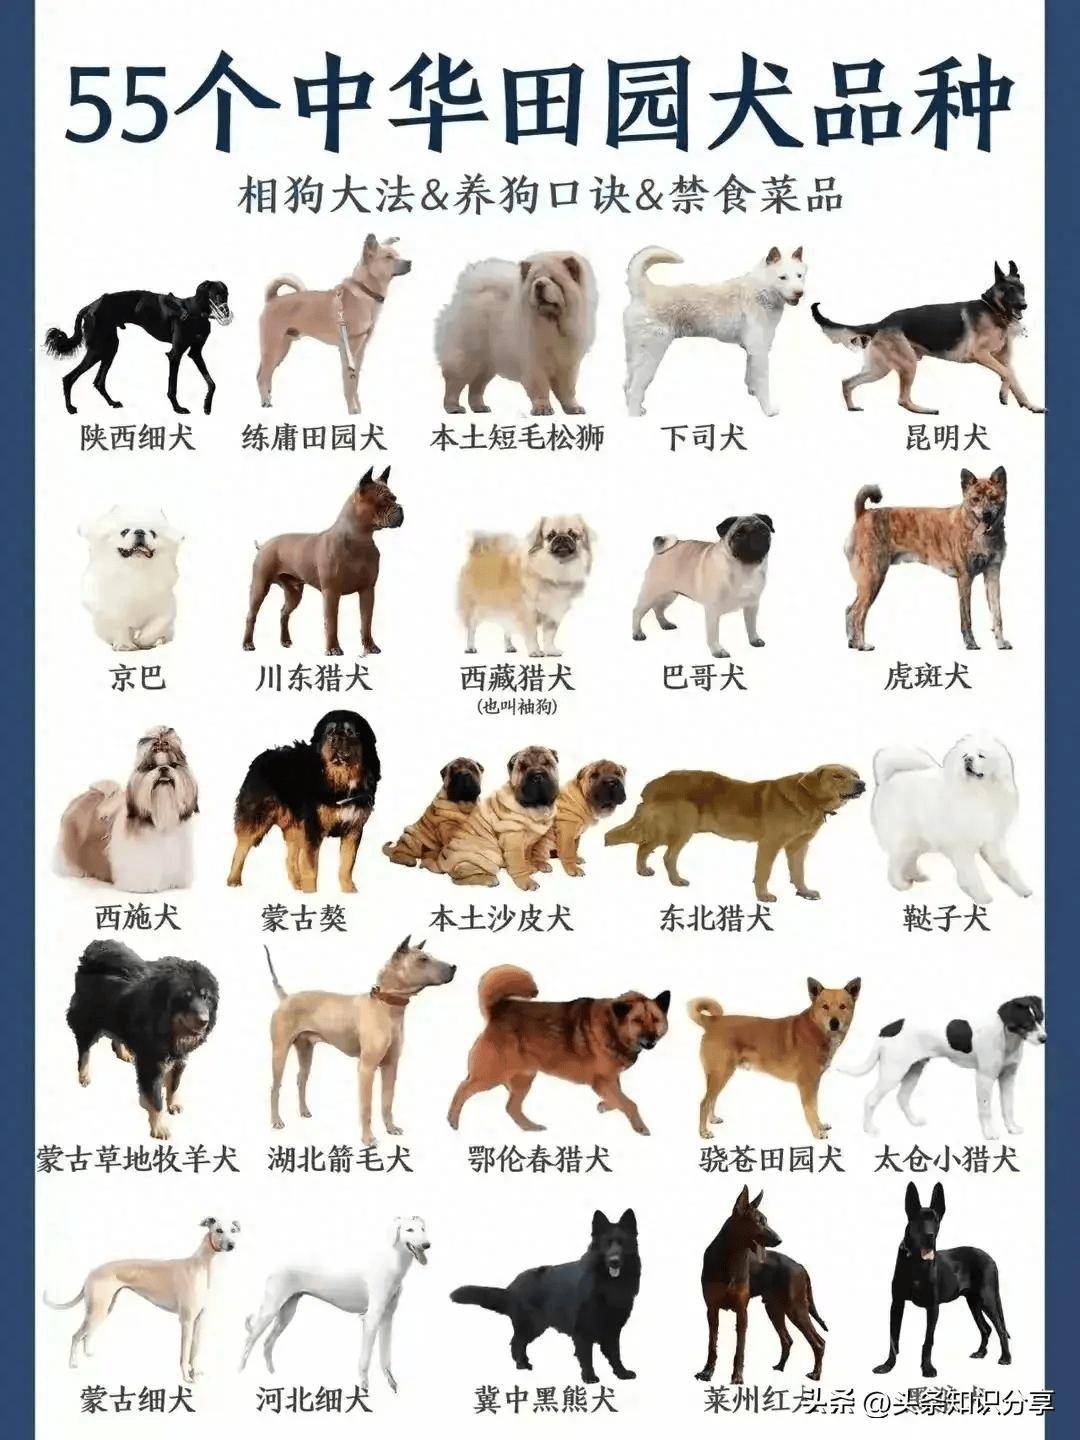 55个中华田园犬品种